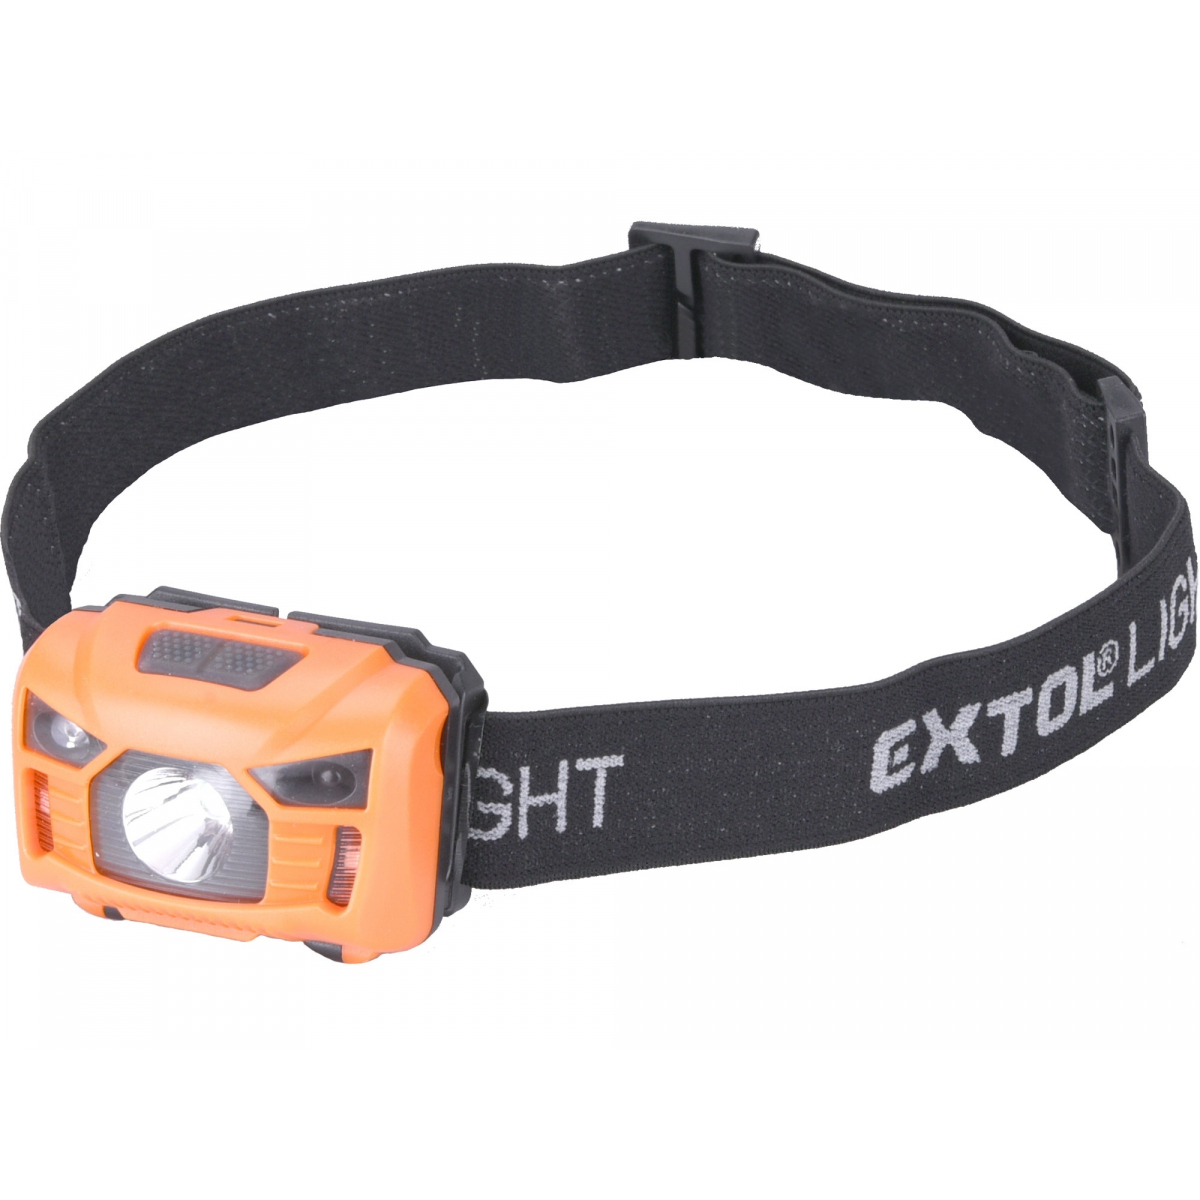 EXTOL LIGHT čelovka 100lm, USB nabíjení s IR čidlem, 3W LED